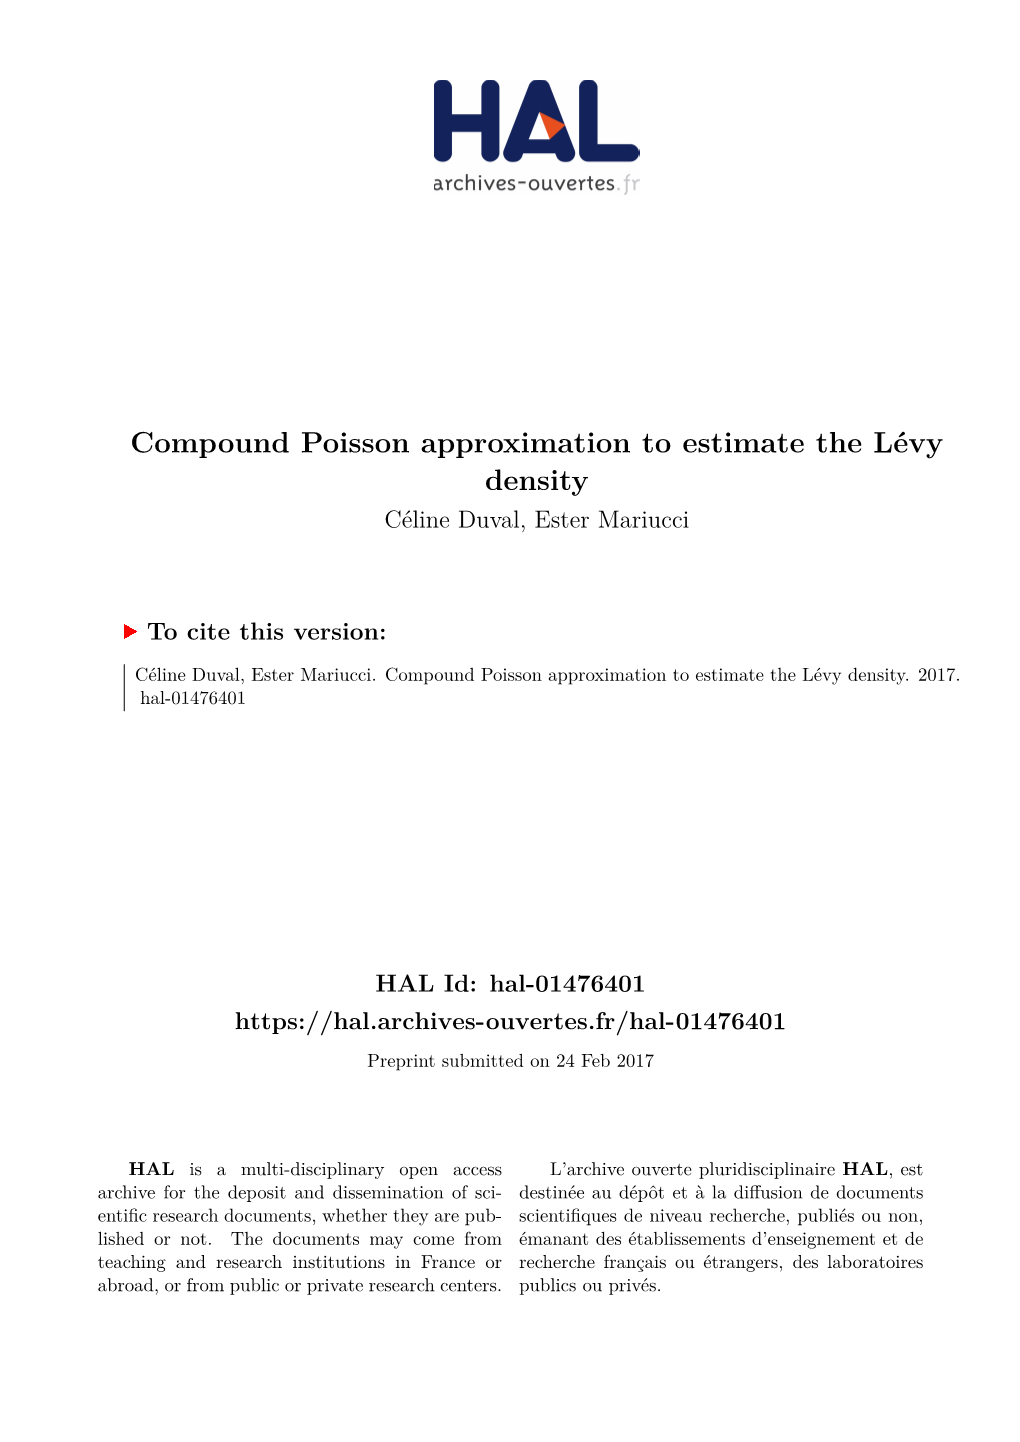 Compound Poisson Approximation to Estimate the Lévy Density Céline Duval, Ester Mariucci